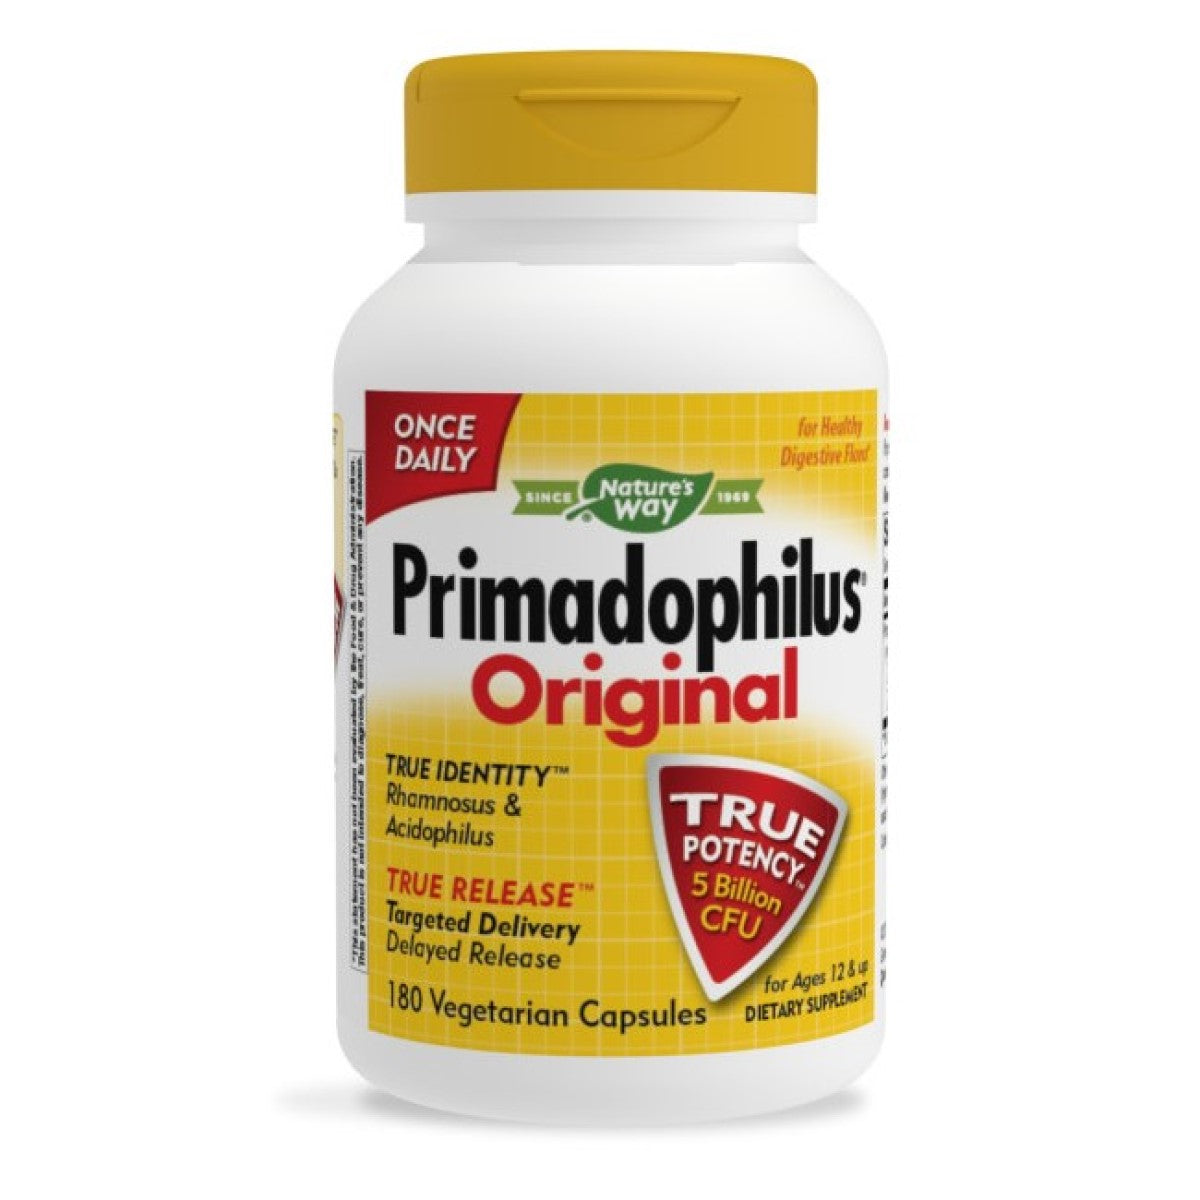 Primary image of Primadophilus